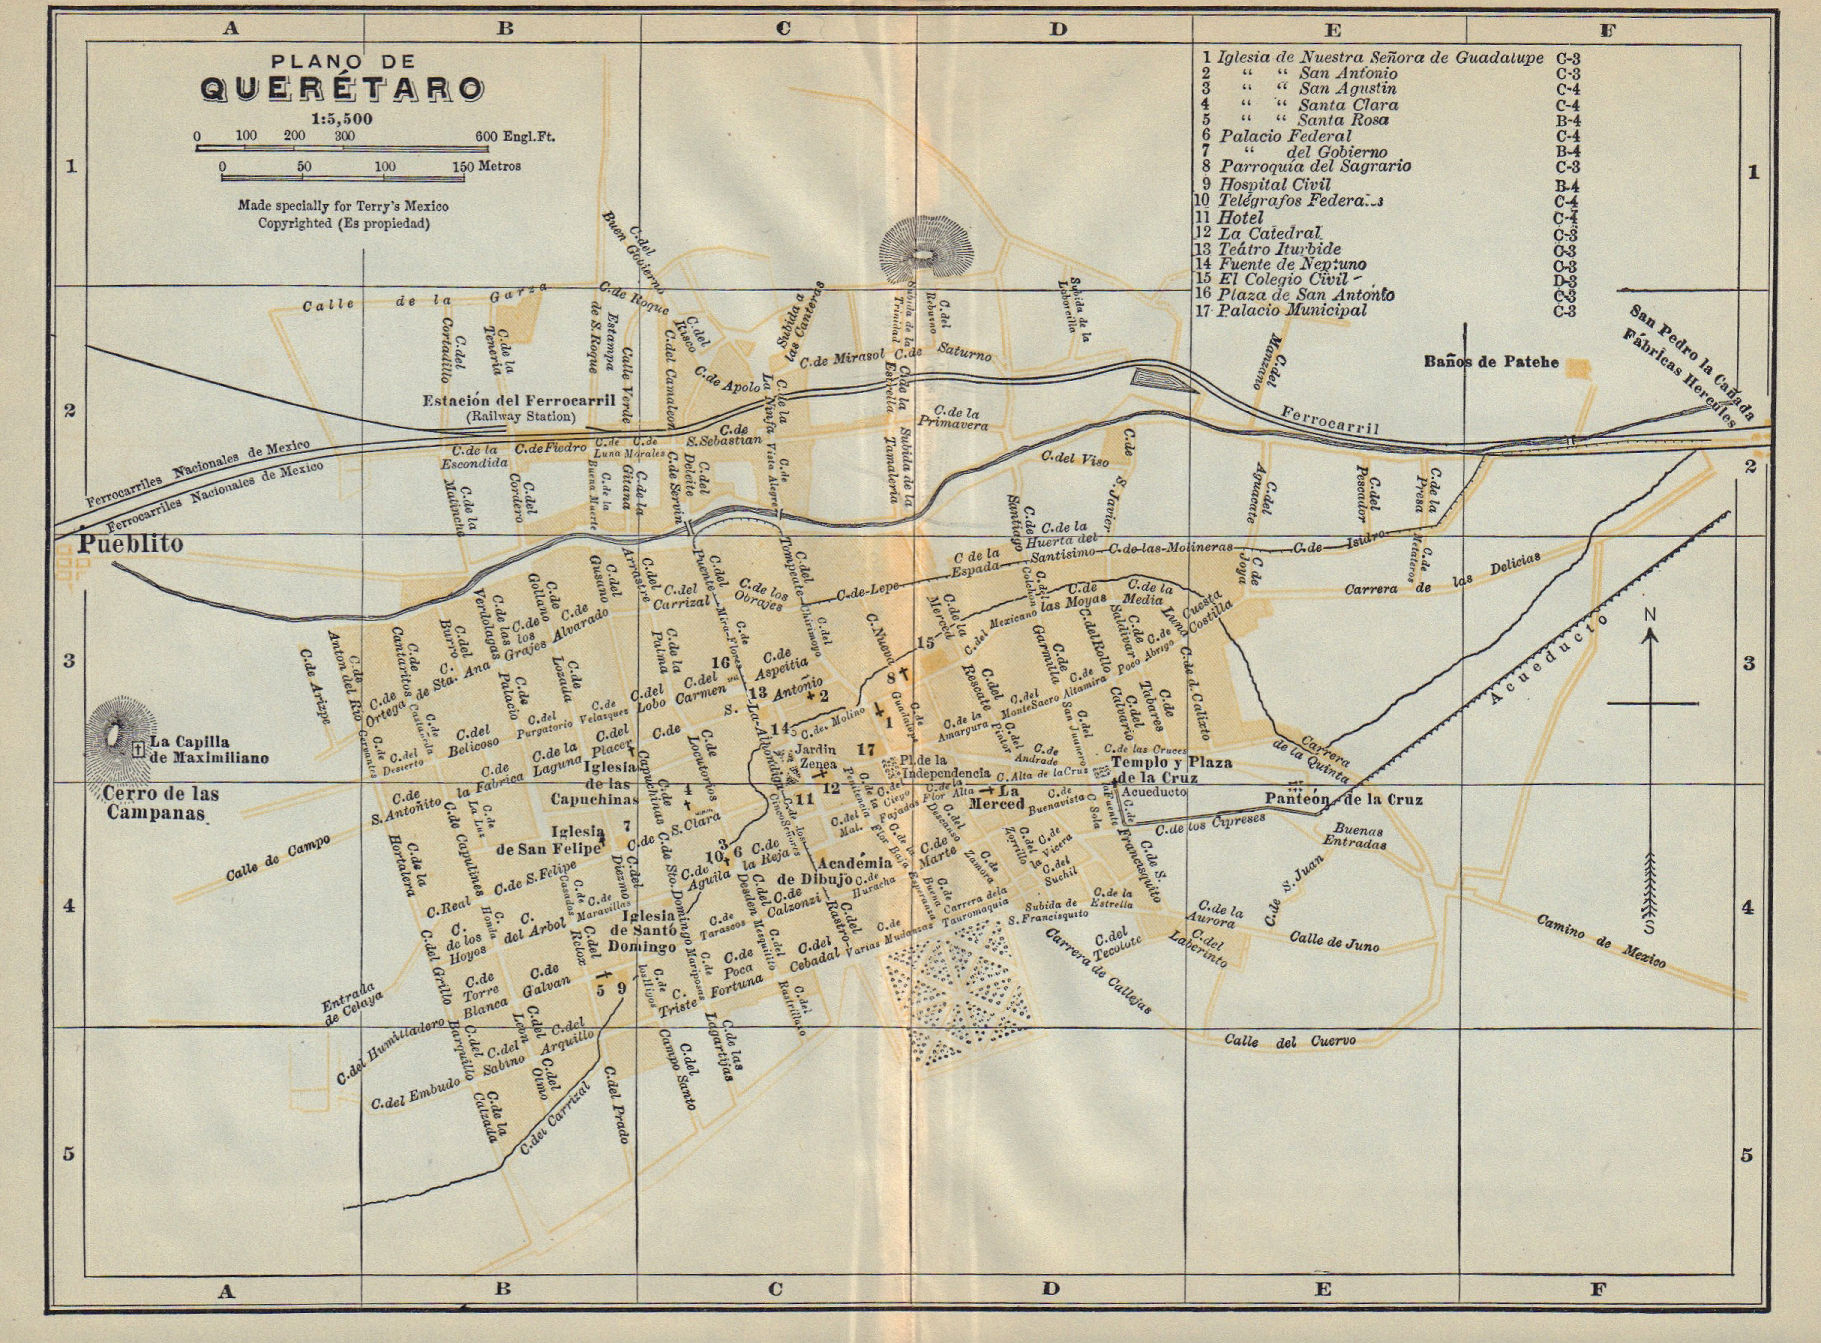 Plano de SANTIAGO DE QUERETARO, Mexico. Mapa de la ciudad. City/town plan 1938